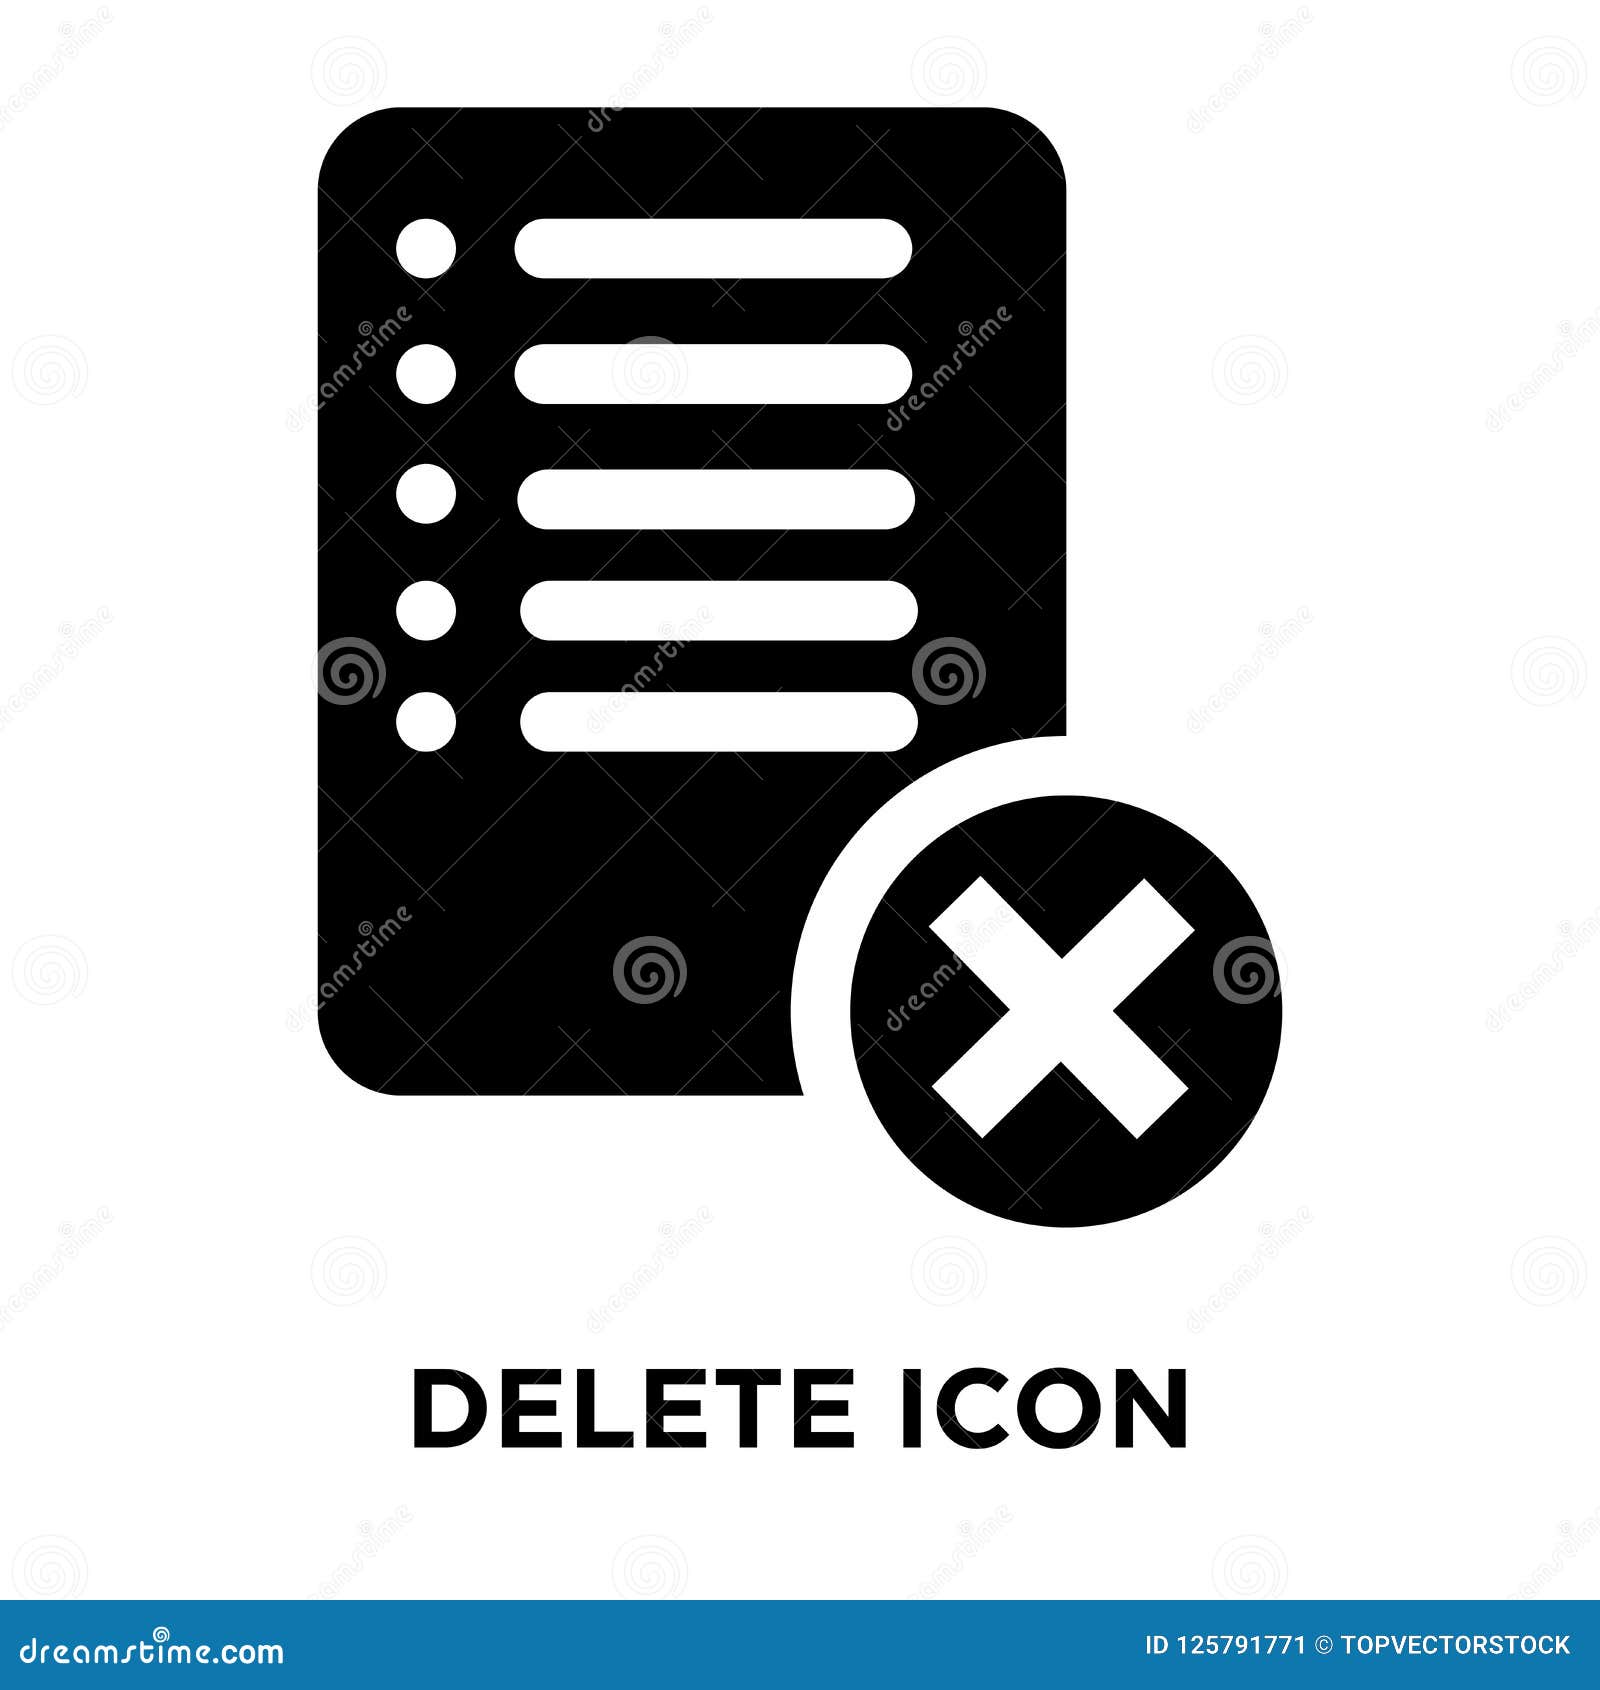 Công cụ xóa Icon: Tạo điểm nhấn riêng cho hình ảnh của bạn! Với công cụ xóa icon, bạn có thể thuận tiện và nhanh chóng loại bỏ bất kỳ biểu tượng không mong muốn nào trong tấm hình. Hãy cùng thử để biến những bức ảnh của bạn trở nên tinh tế và thú vị hơn nhé!